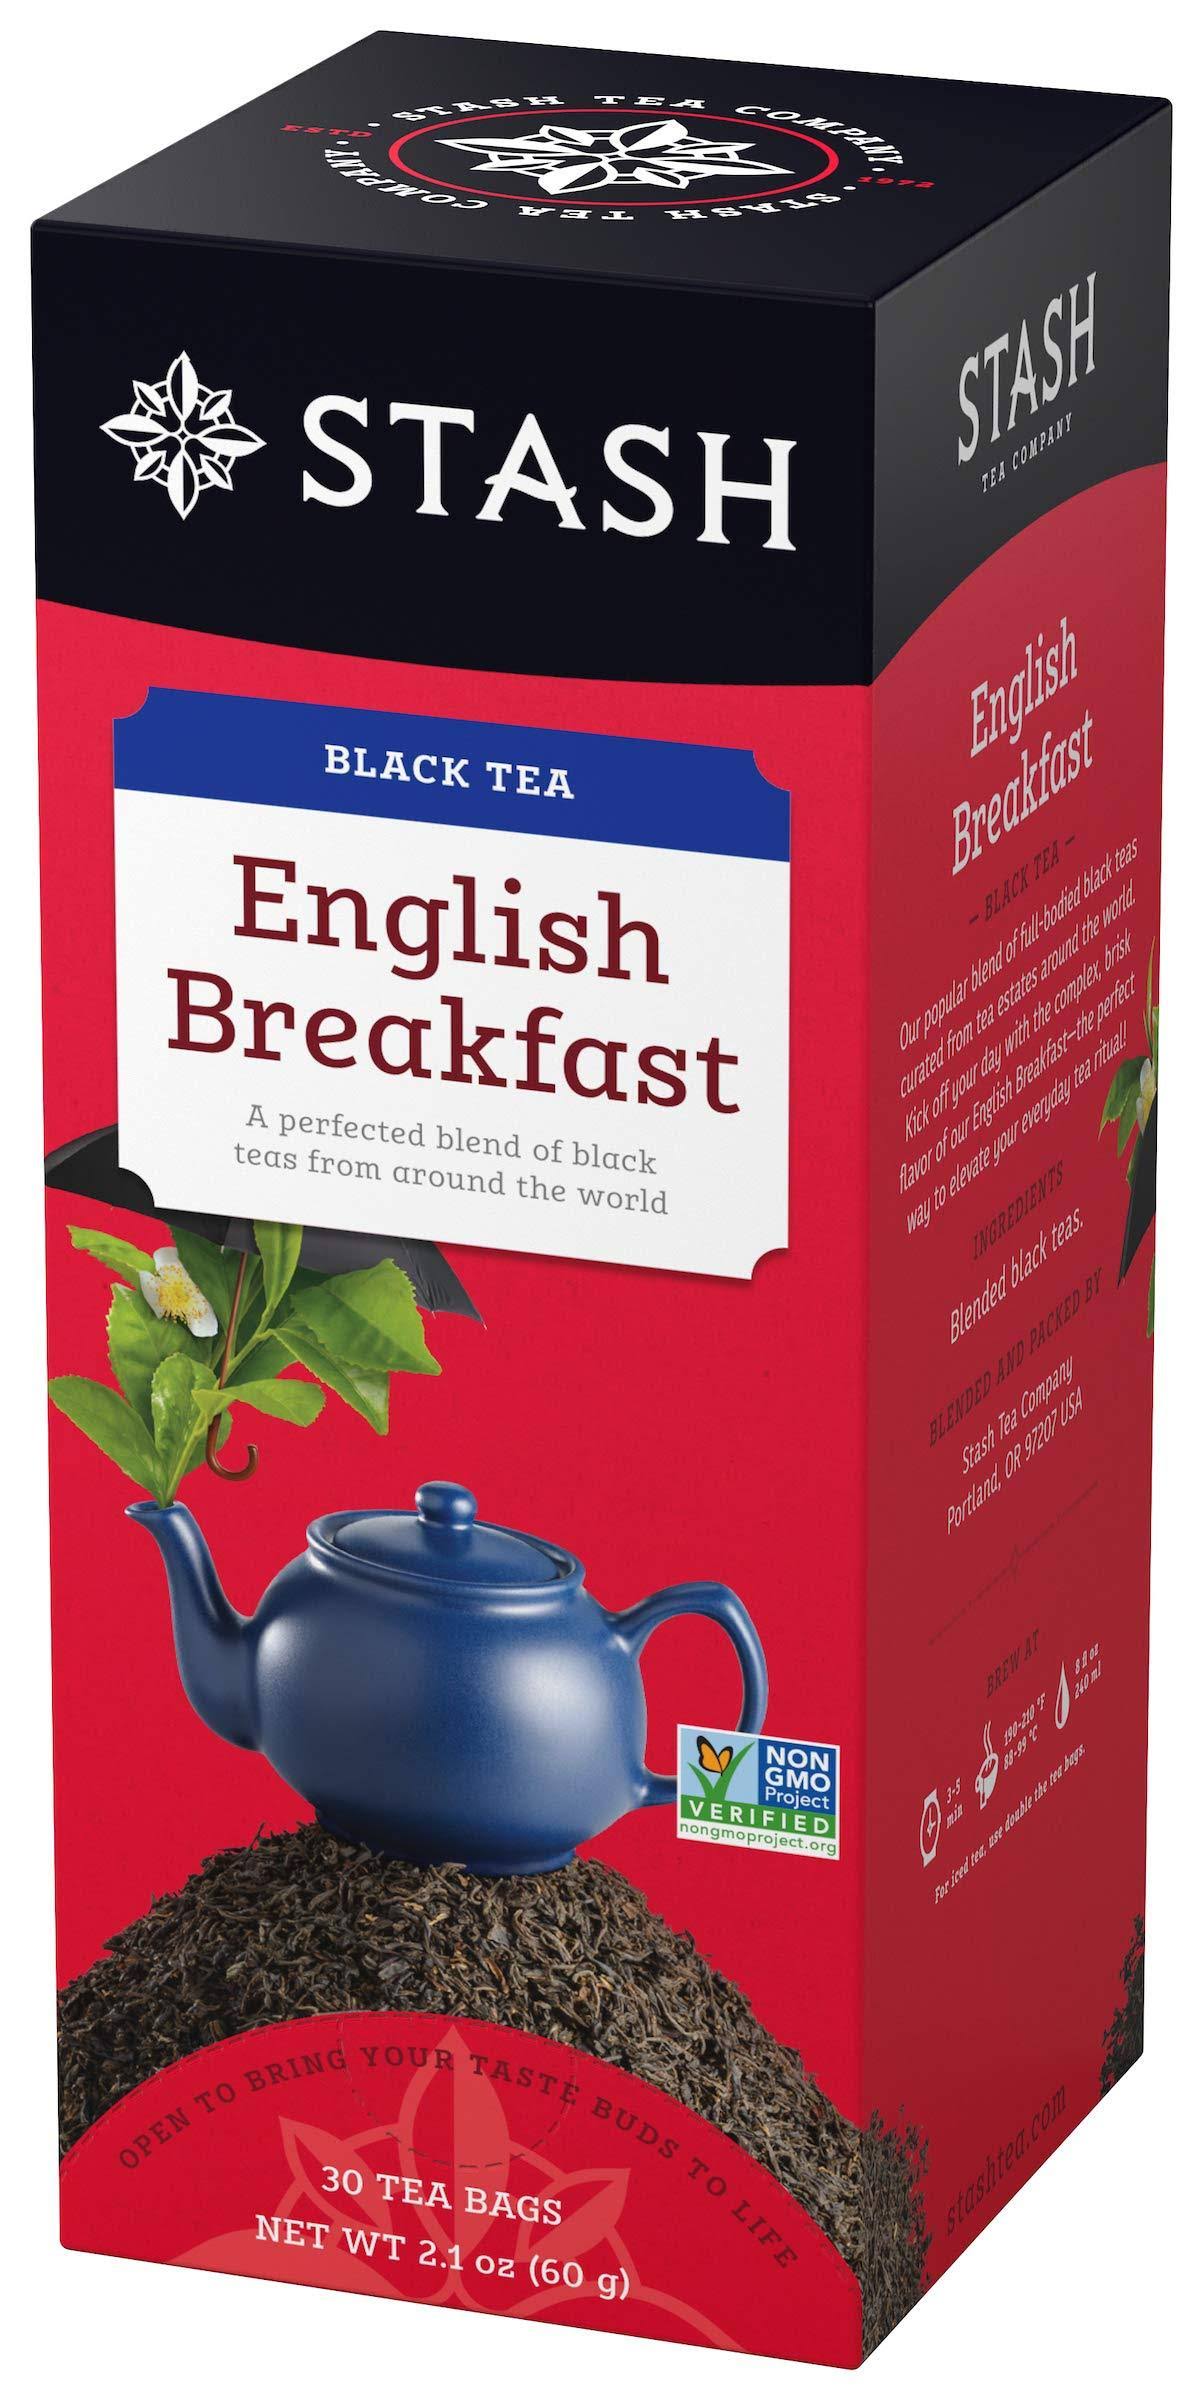 Stash Tea English Breakfast Black Tea - 30 Tea Bags